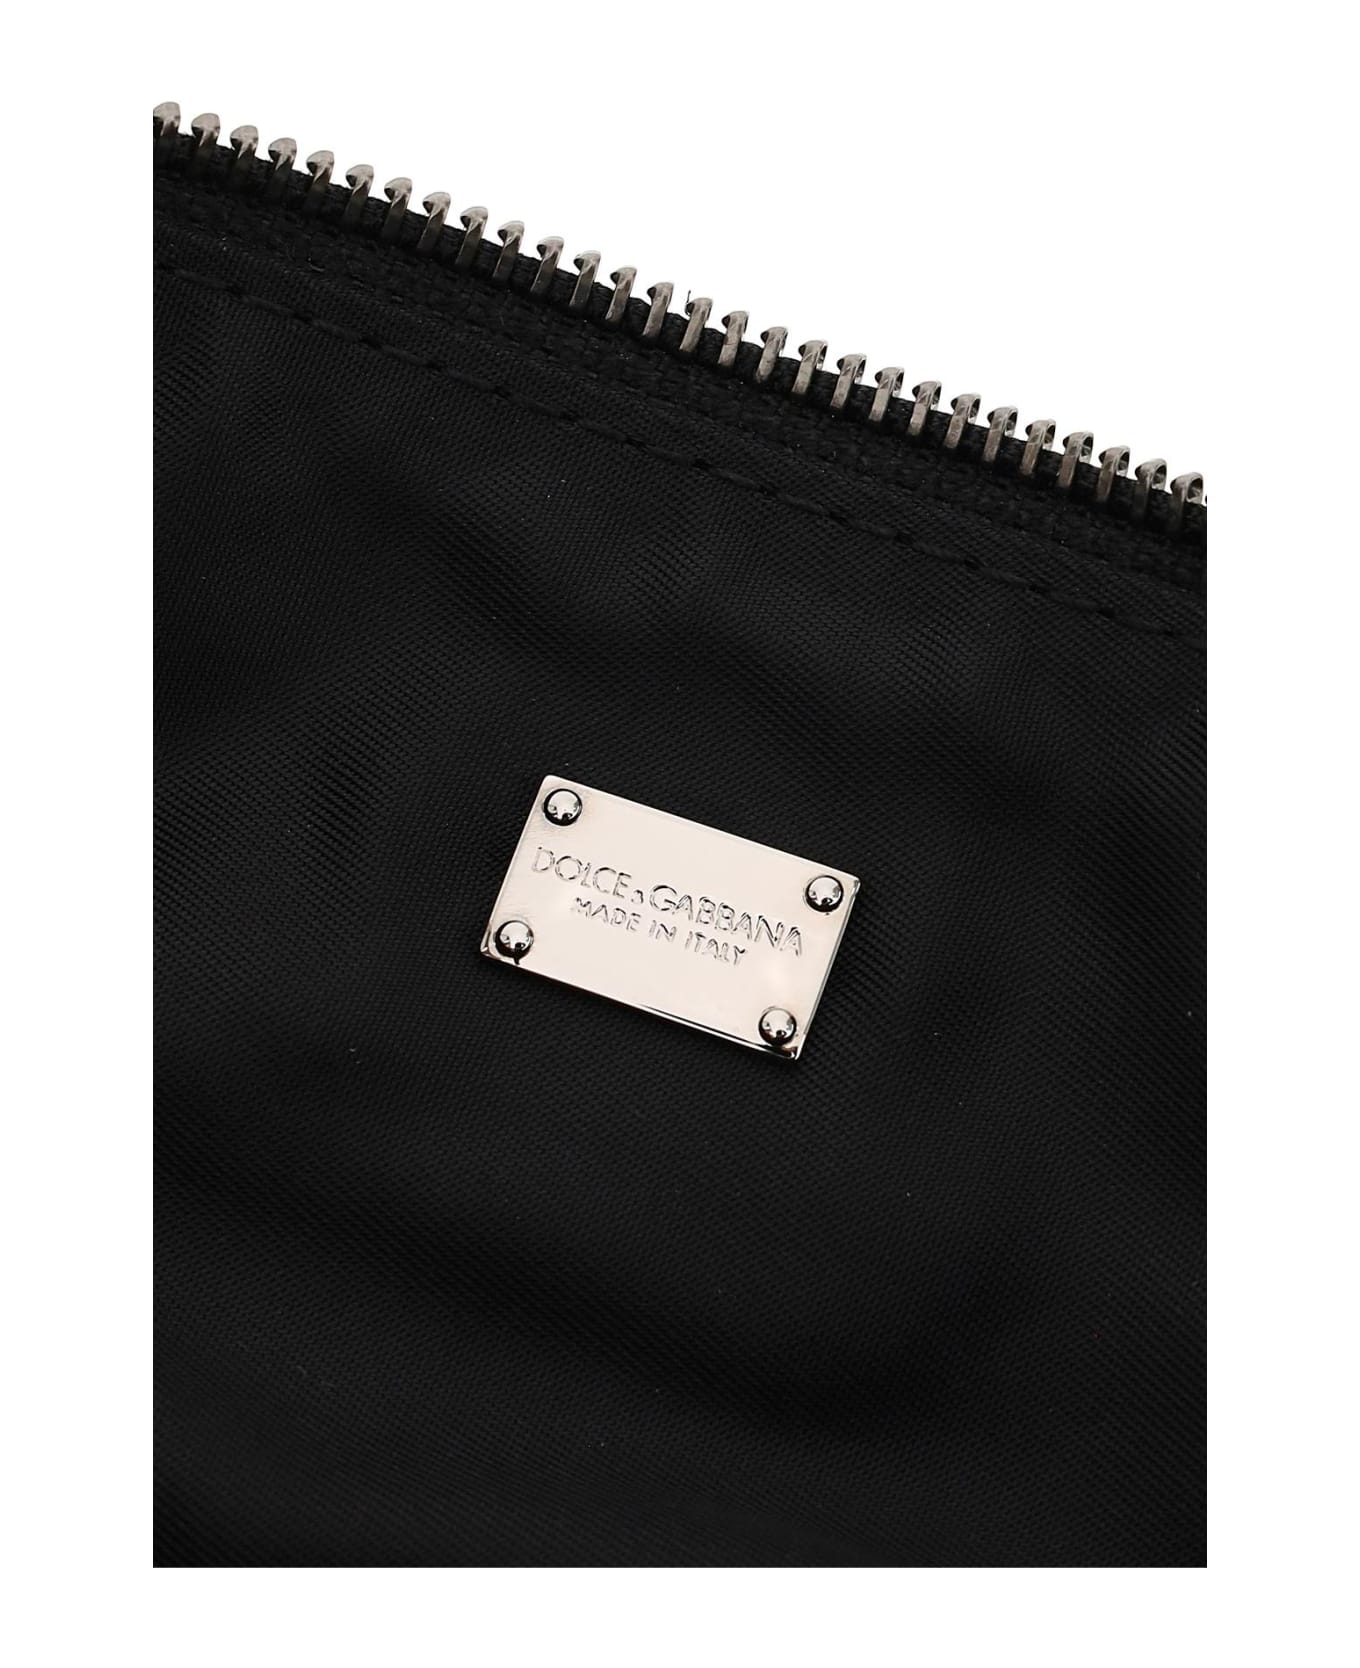 Dolce & Gabbana Jacquard Fabric Pouch - MULTICOLOR NERO (Black)